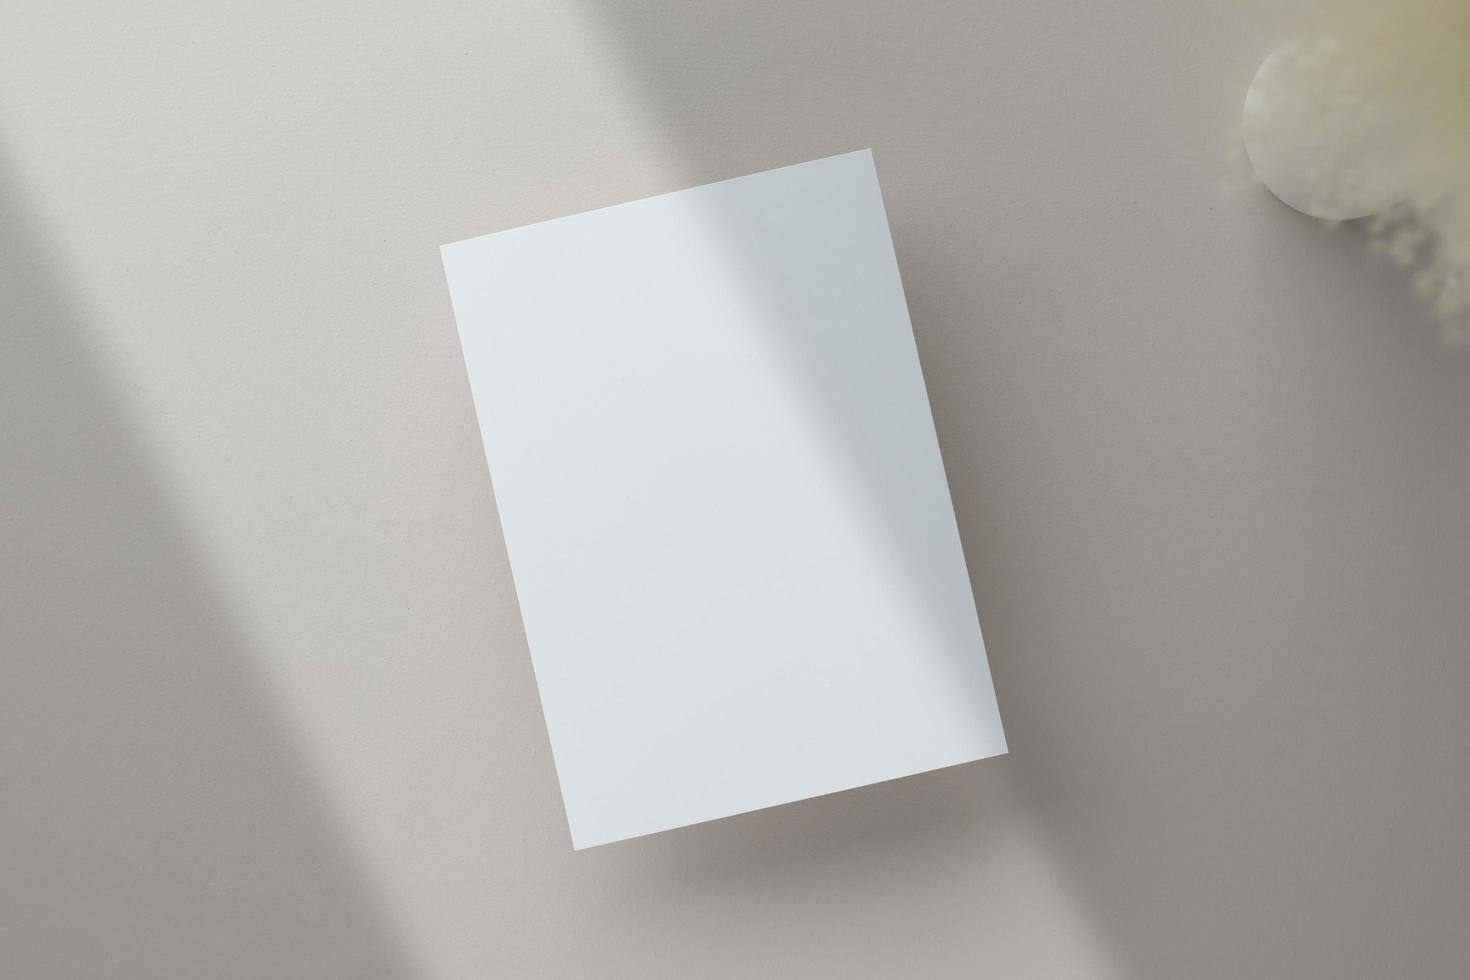 maquete de convite de cartão em branco 5x7 no envelope com flores secas e fita em fundo de papel, postura plana, maquete foto